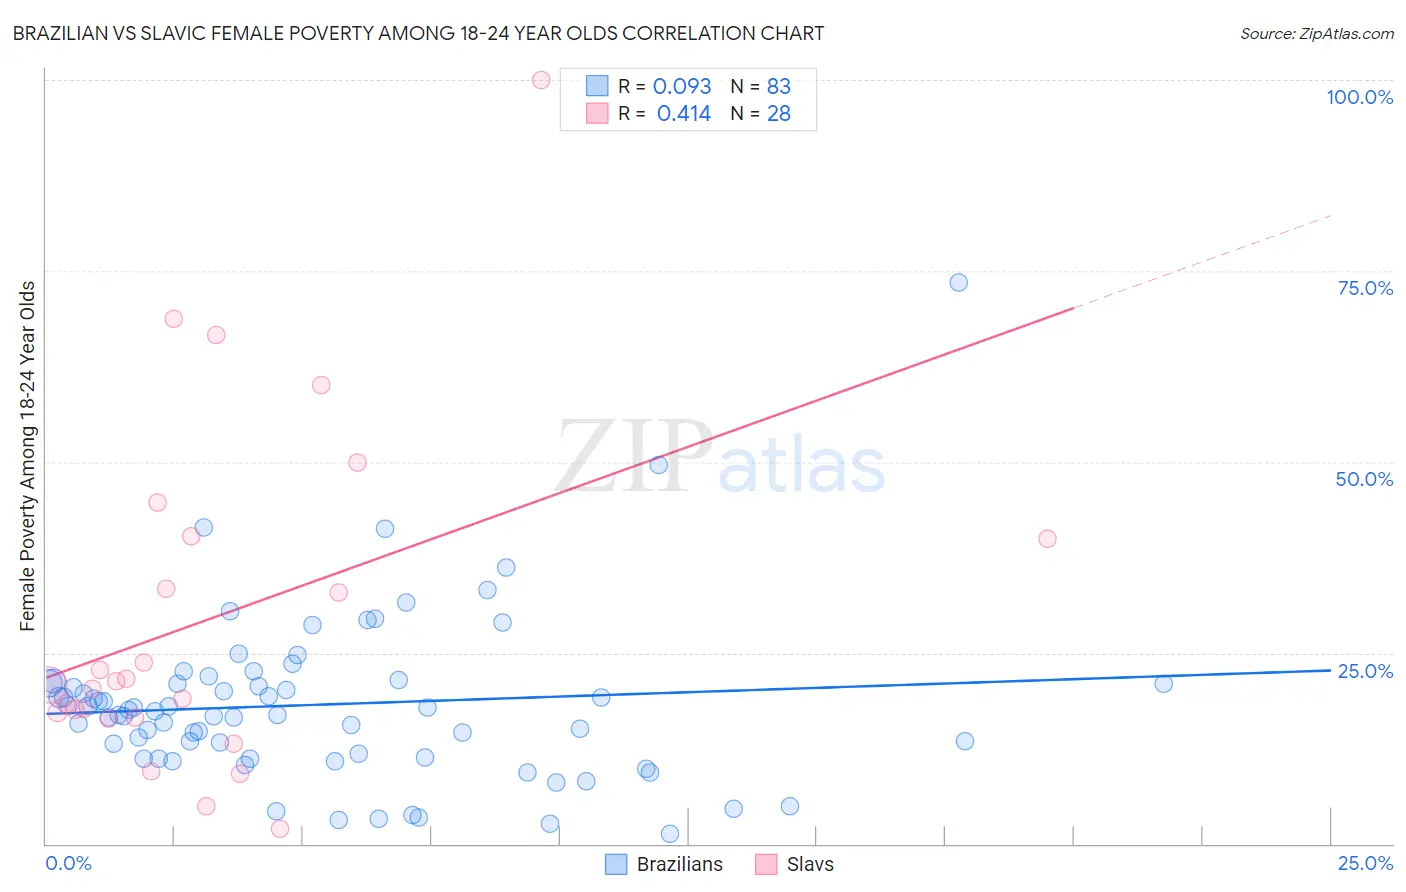 Brazilian vs Slavic Female Poverty Among 18-24 Year Olds